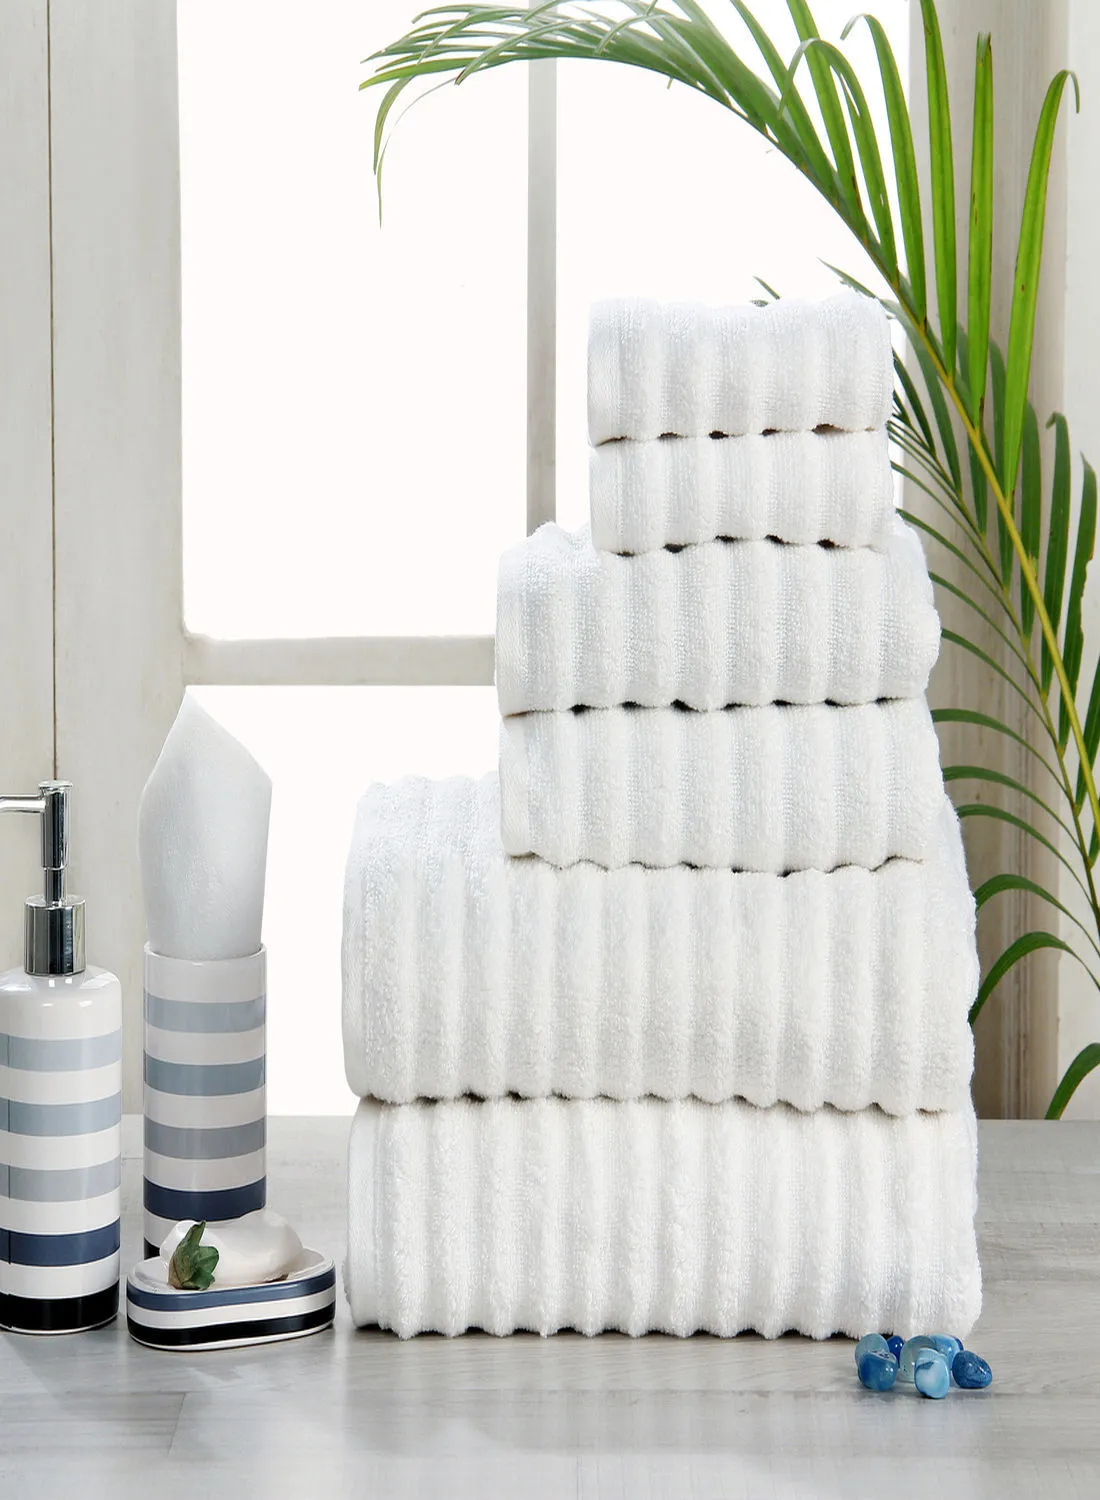 Hometown 6 Pack Hometown Bathroom Towel Set -500 GSM 100% Cotton Low Twist -2 Hand Towel -2 Face Towel -2 Bath Towel -Color Economical